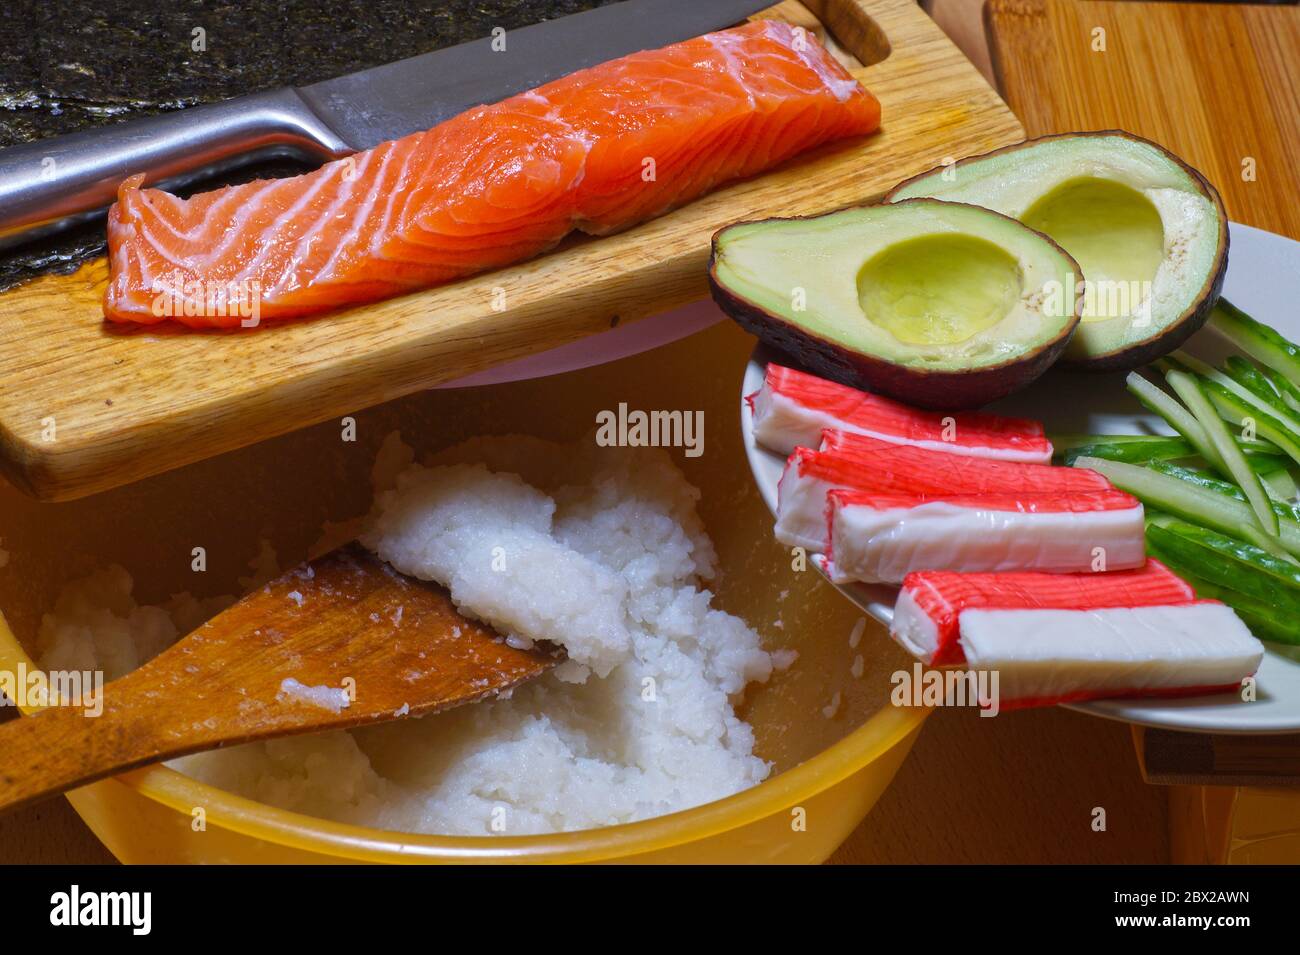 Productos para sushi: Arroz, salmón, palitos de cangrejo surimi, nori kelp,  pepinos y aguacate. Hazlo tú mismo Fotografía de stock - Alamy